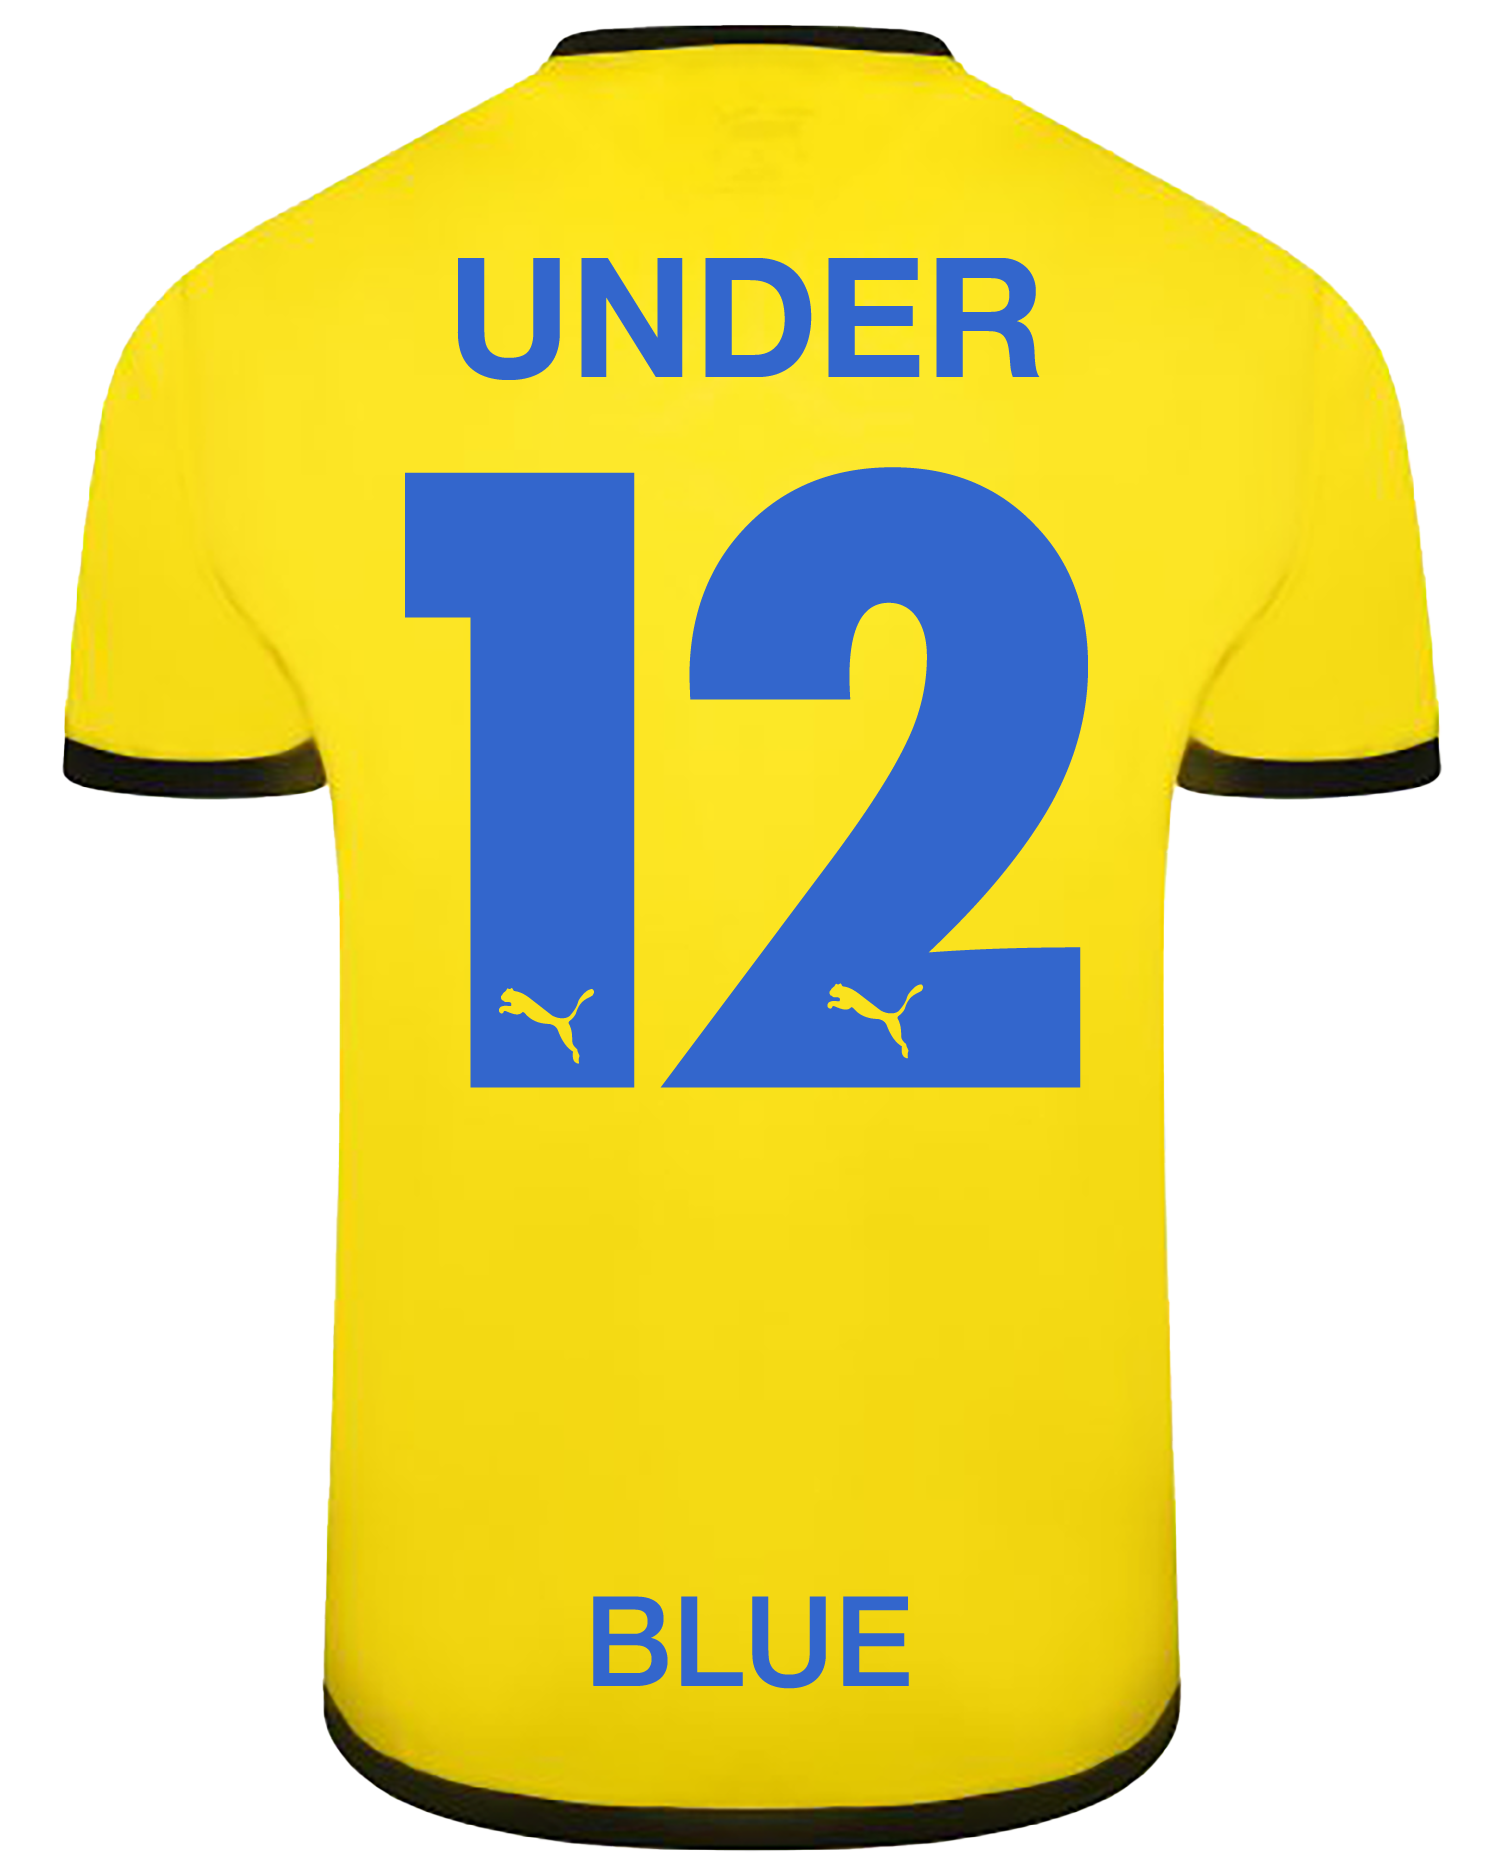 Under 12 (Blue)